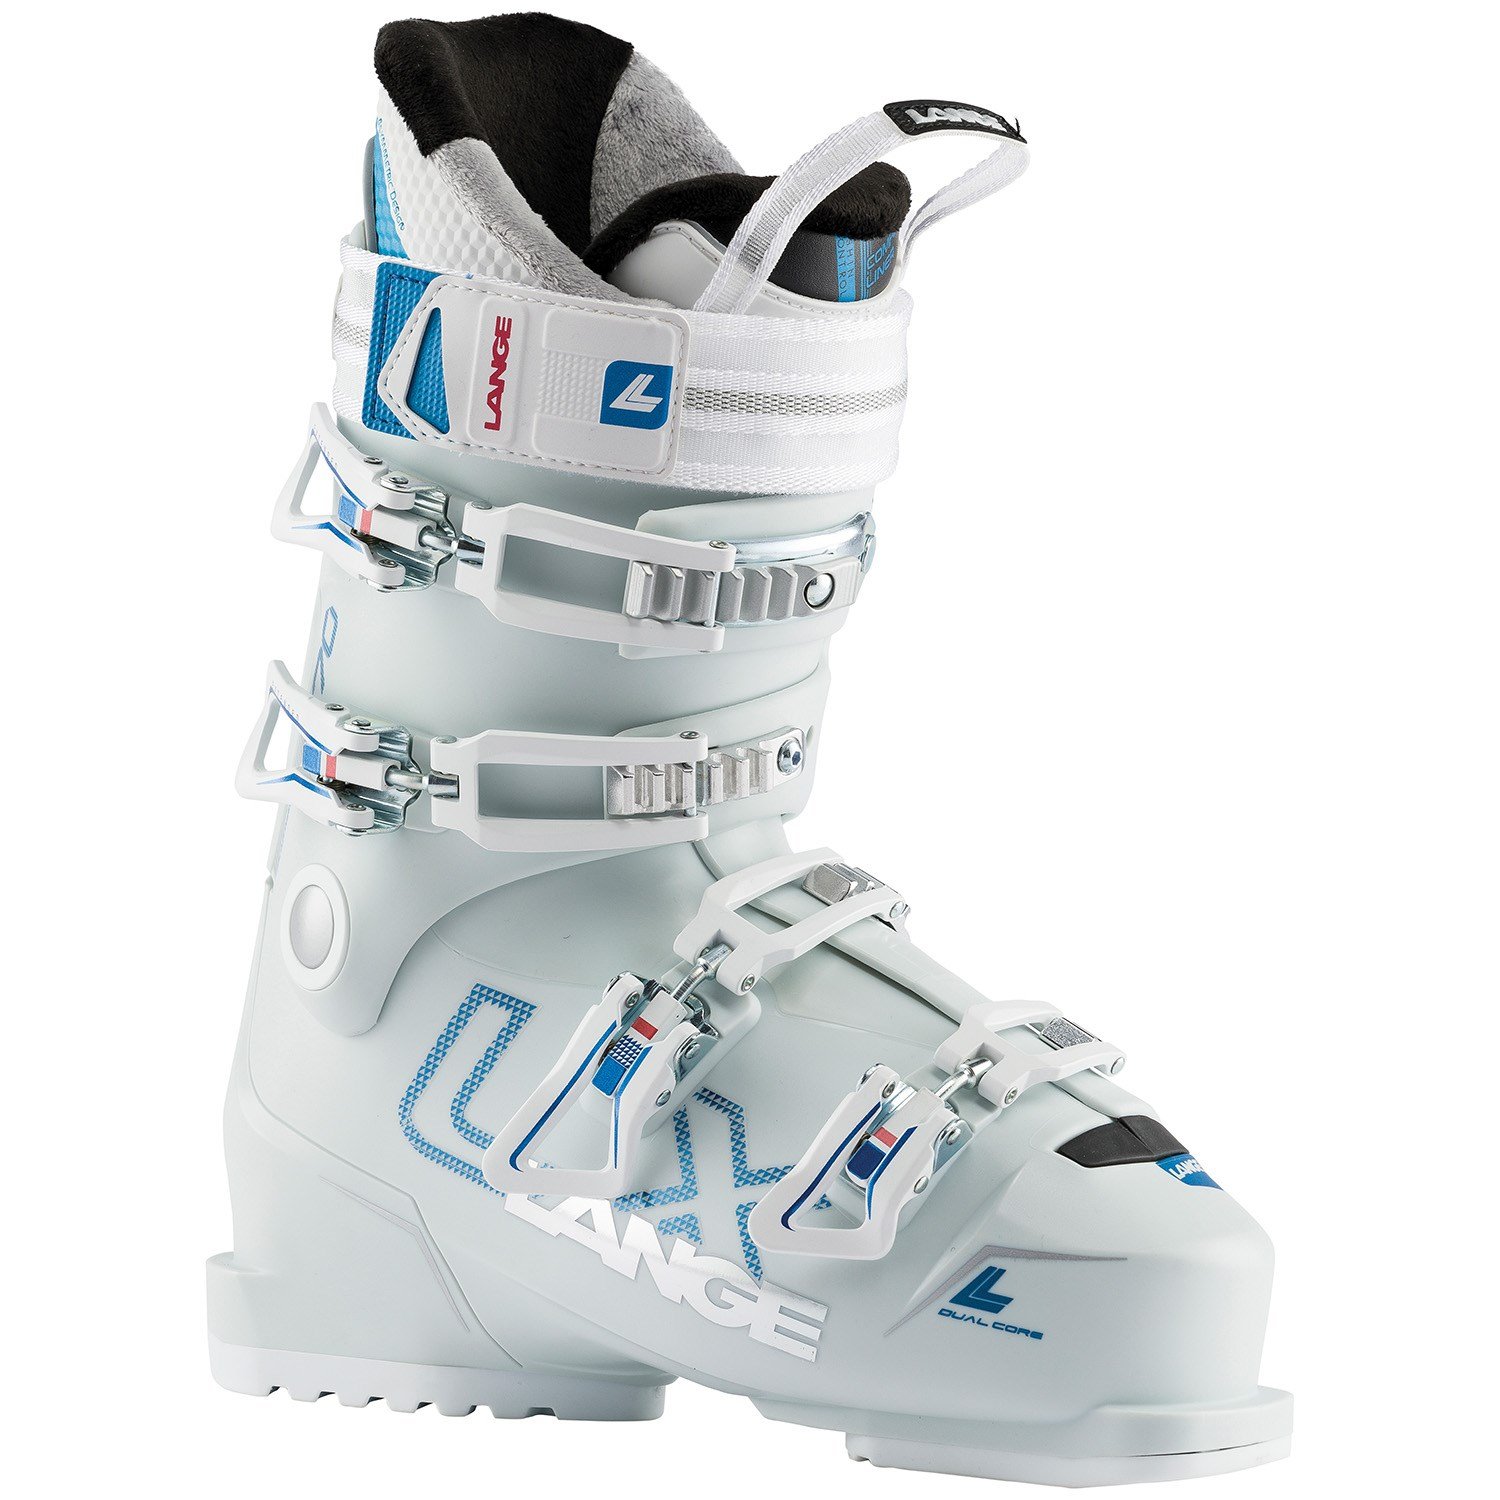 comfy ski boots